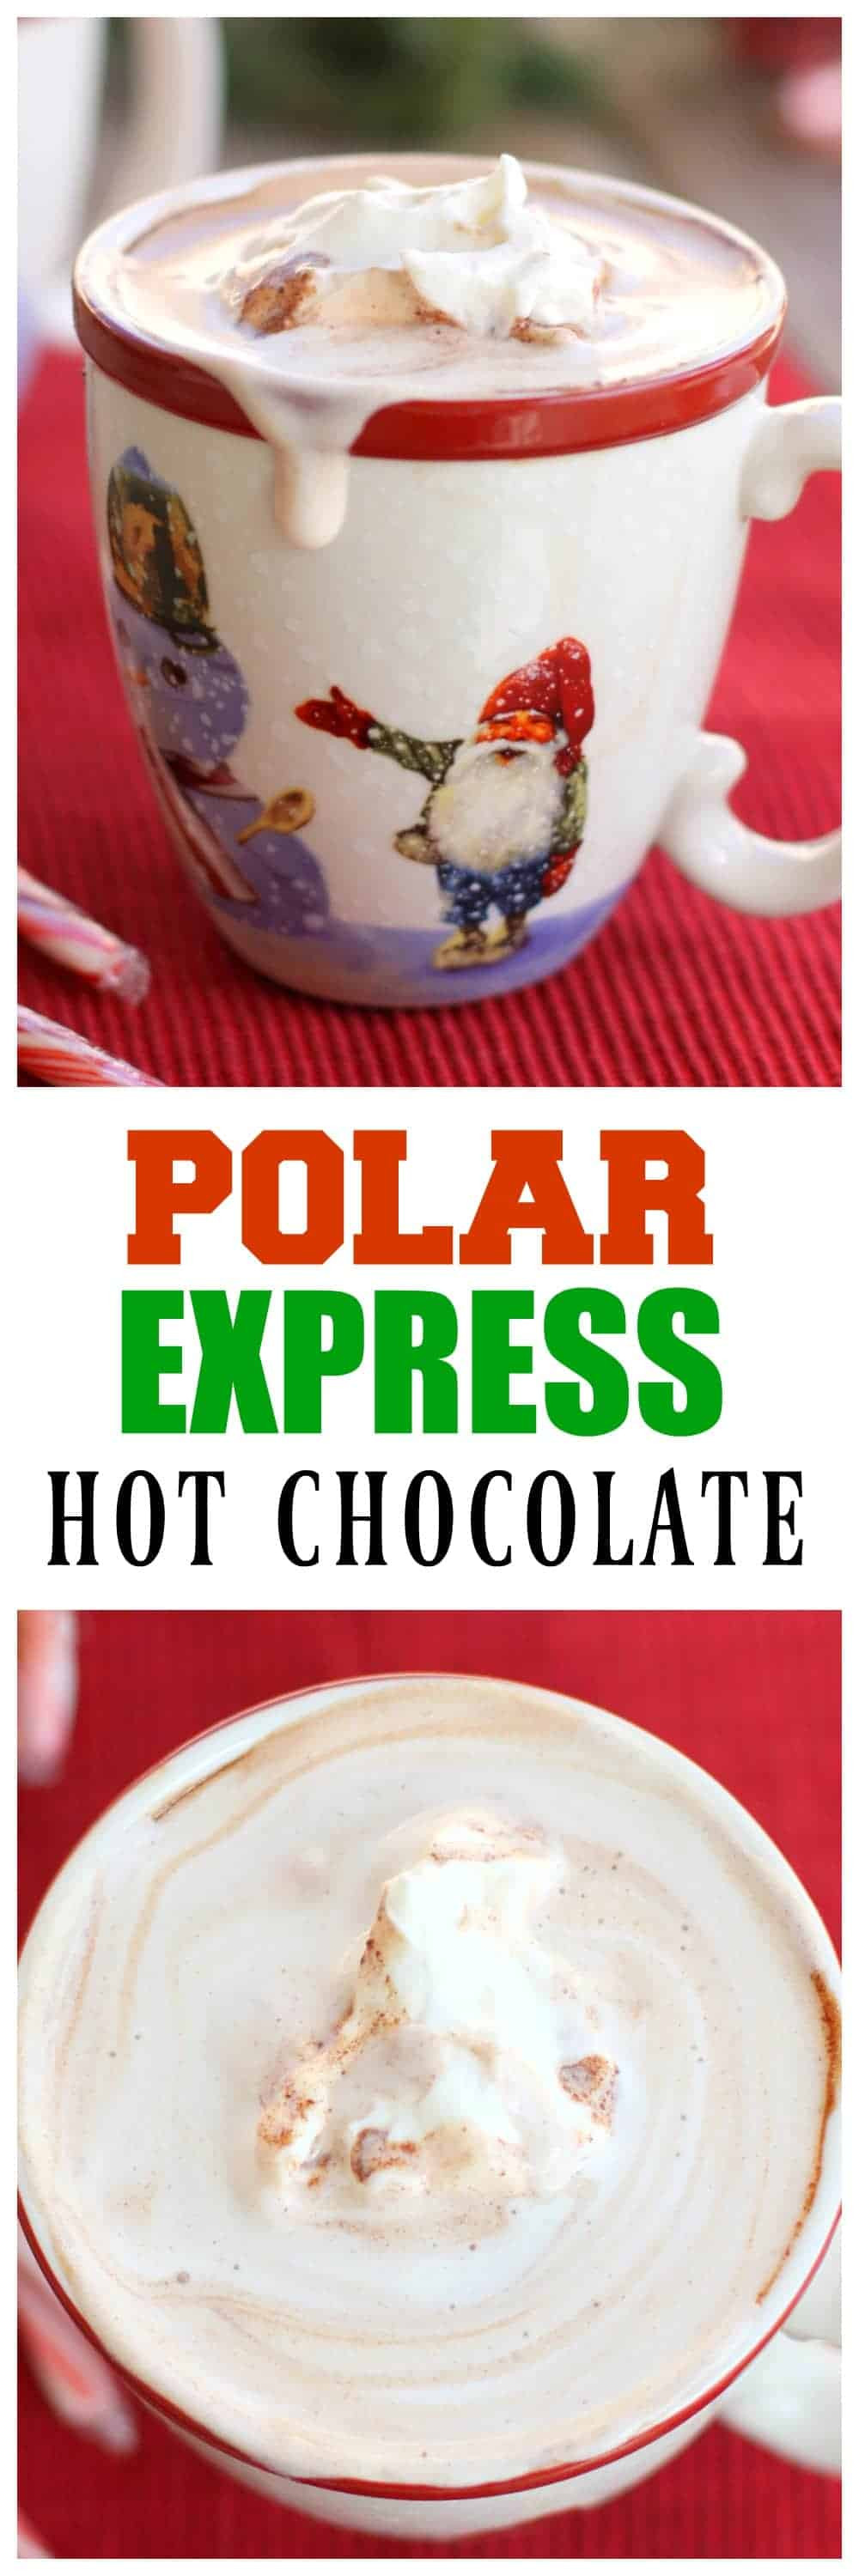 Polar Express Hot Chocolate
 Polar Express Hot Chocolate